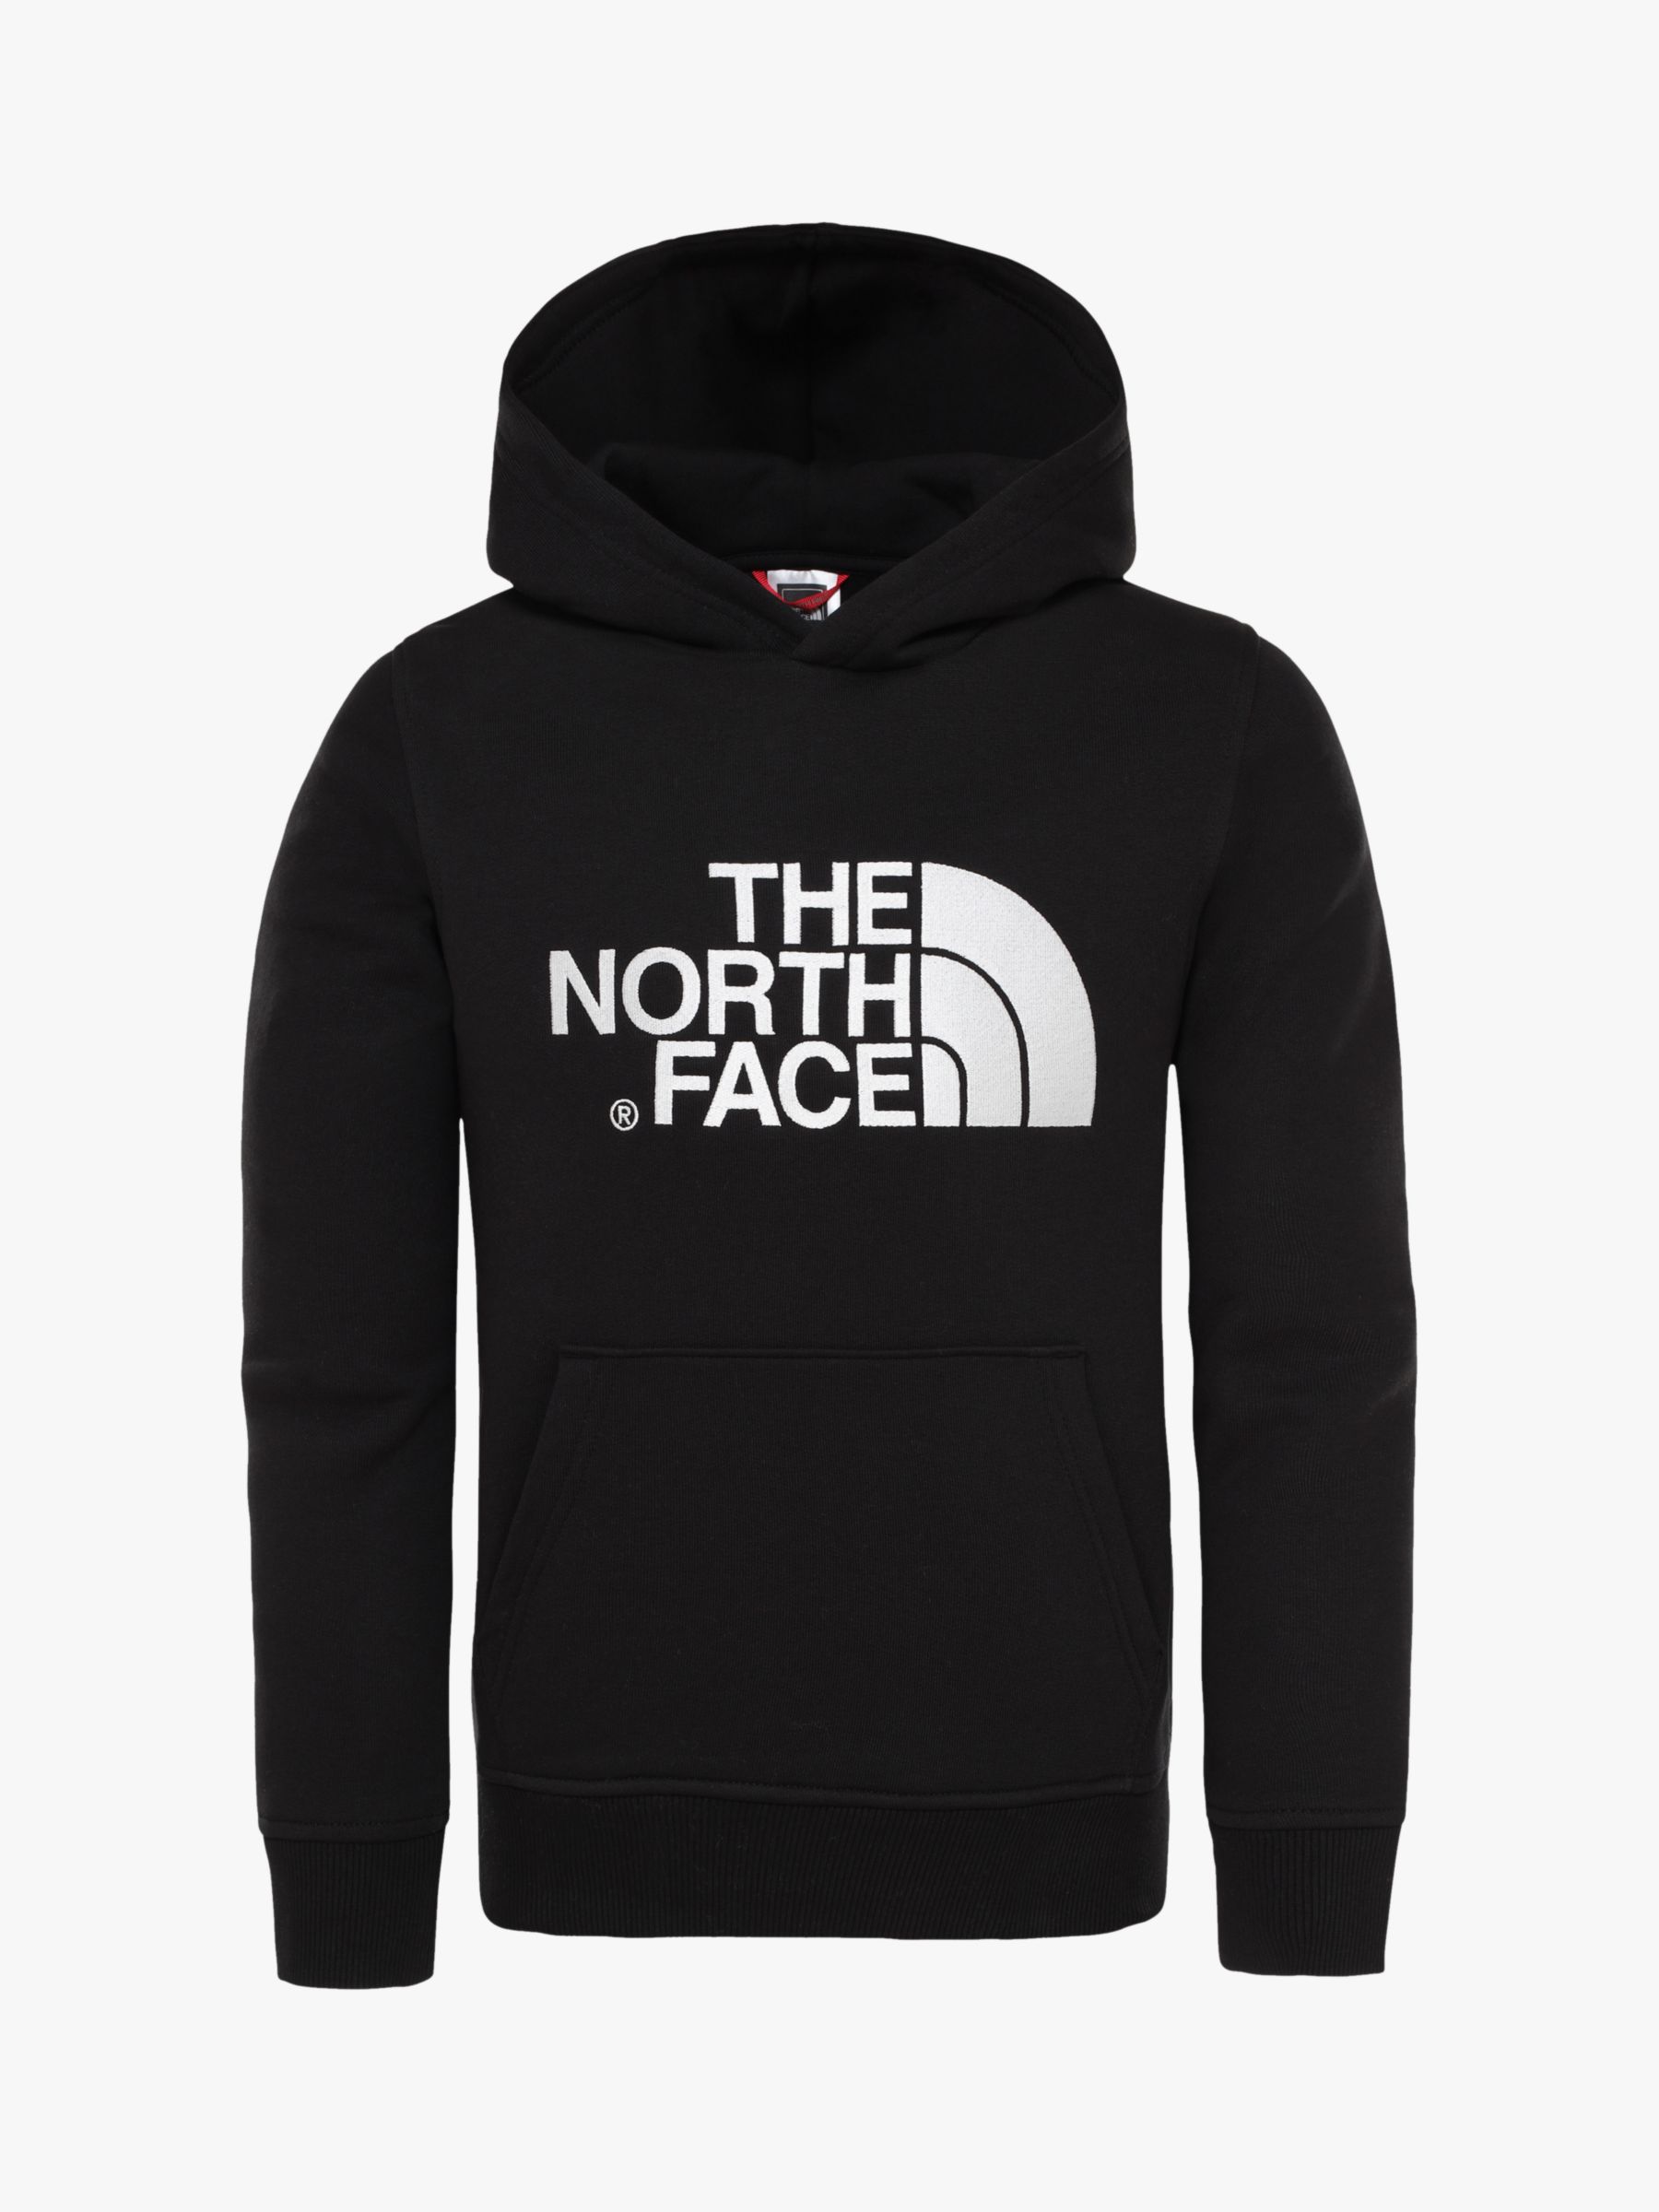 black face hoodies